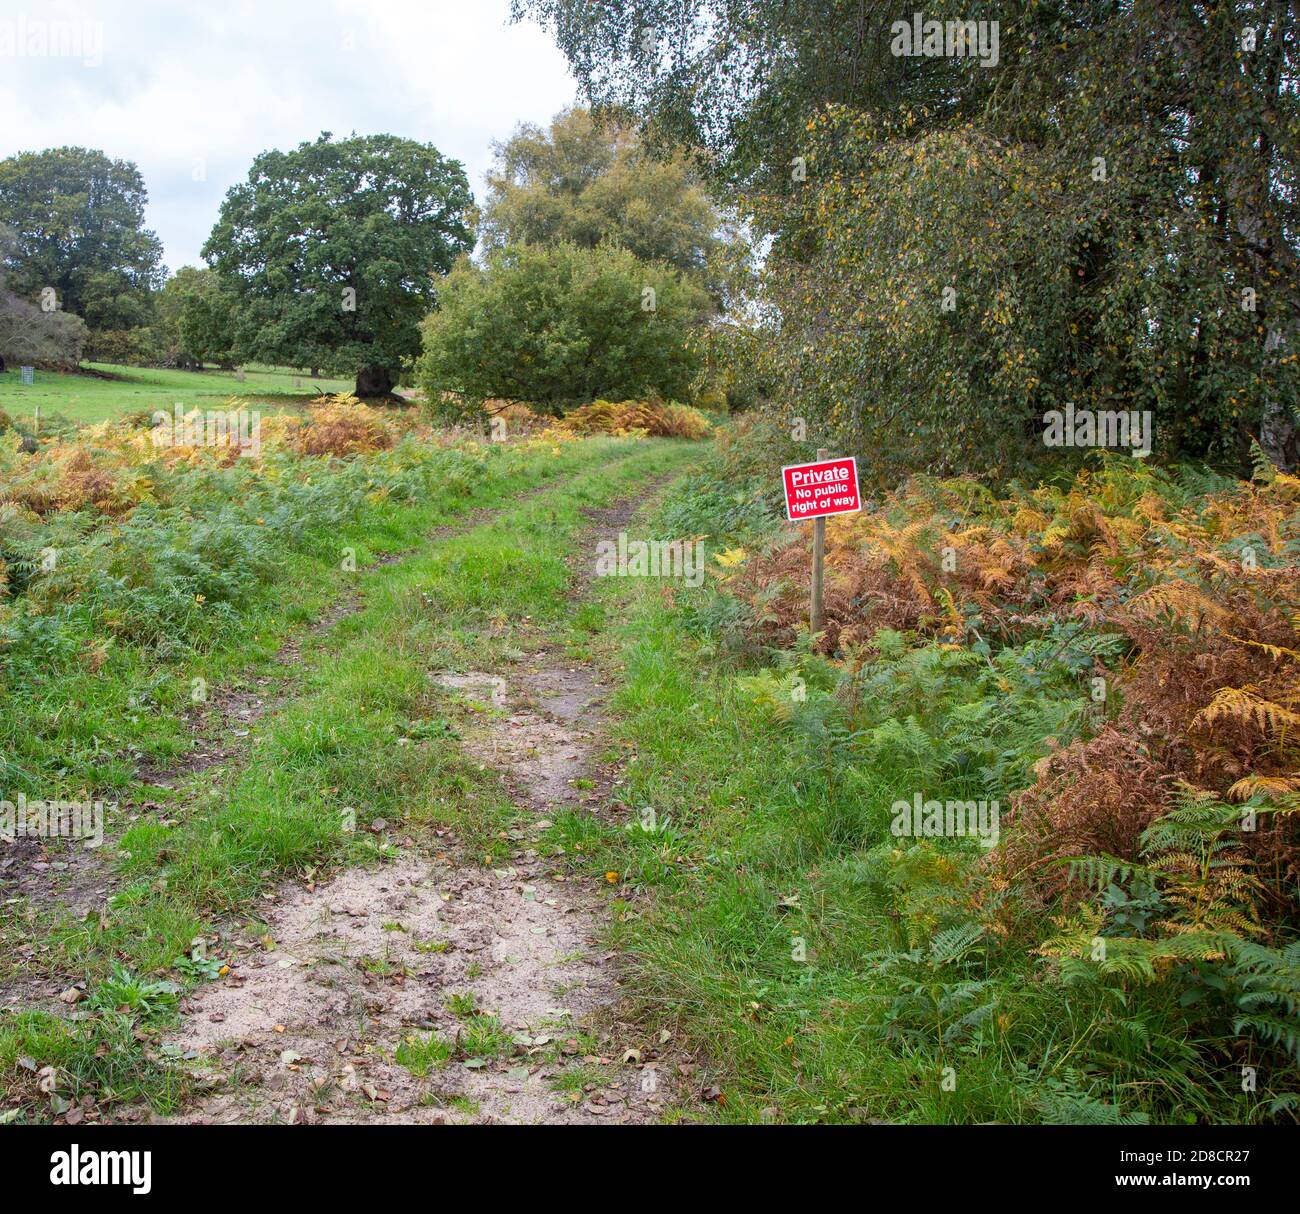 Panneau 'privé pas de droit de passage public', accès à la campagne, domaine de Wantisden, Suffolk, Angleterre, Royaume-Uni Banque D'Images